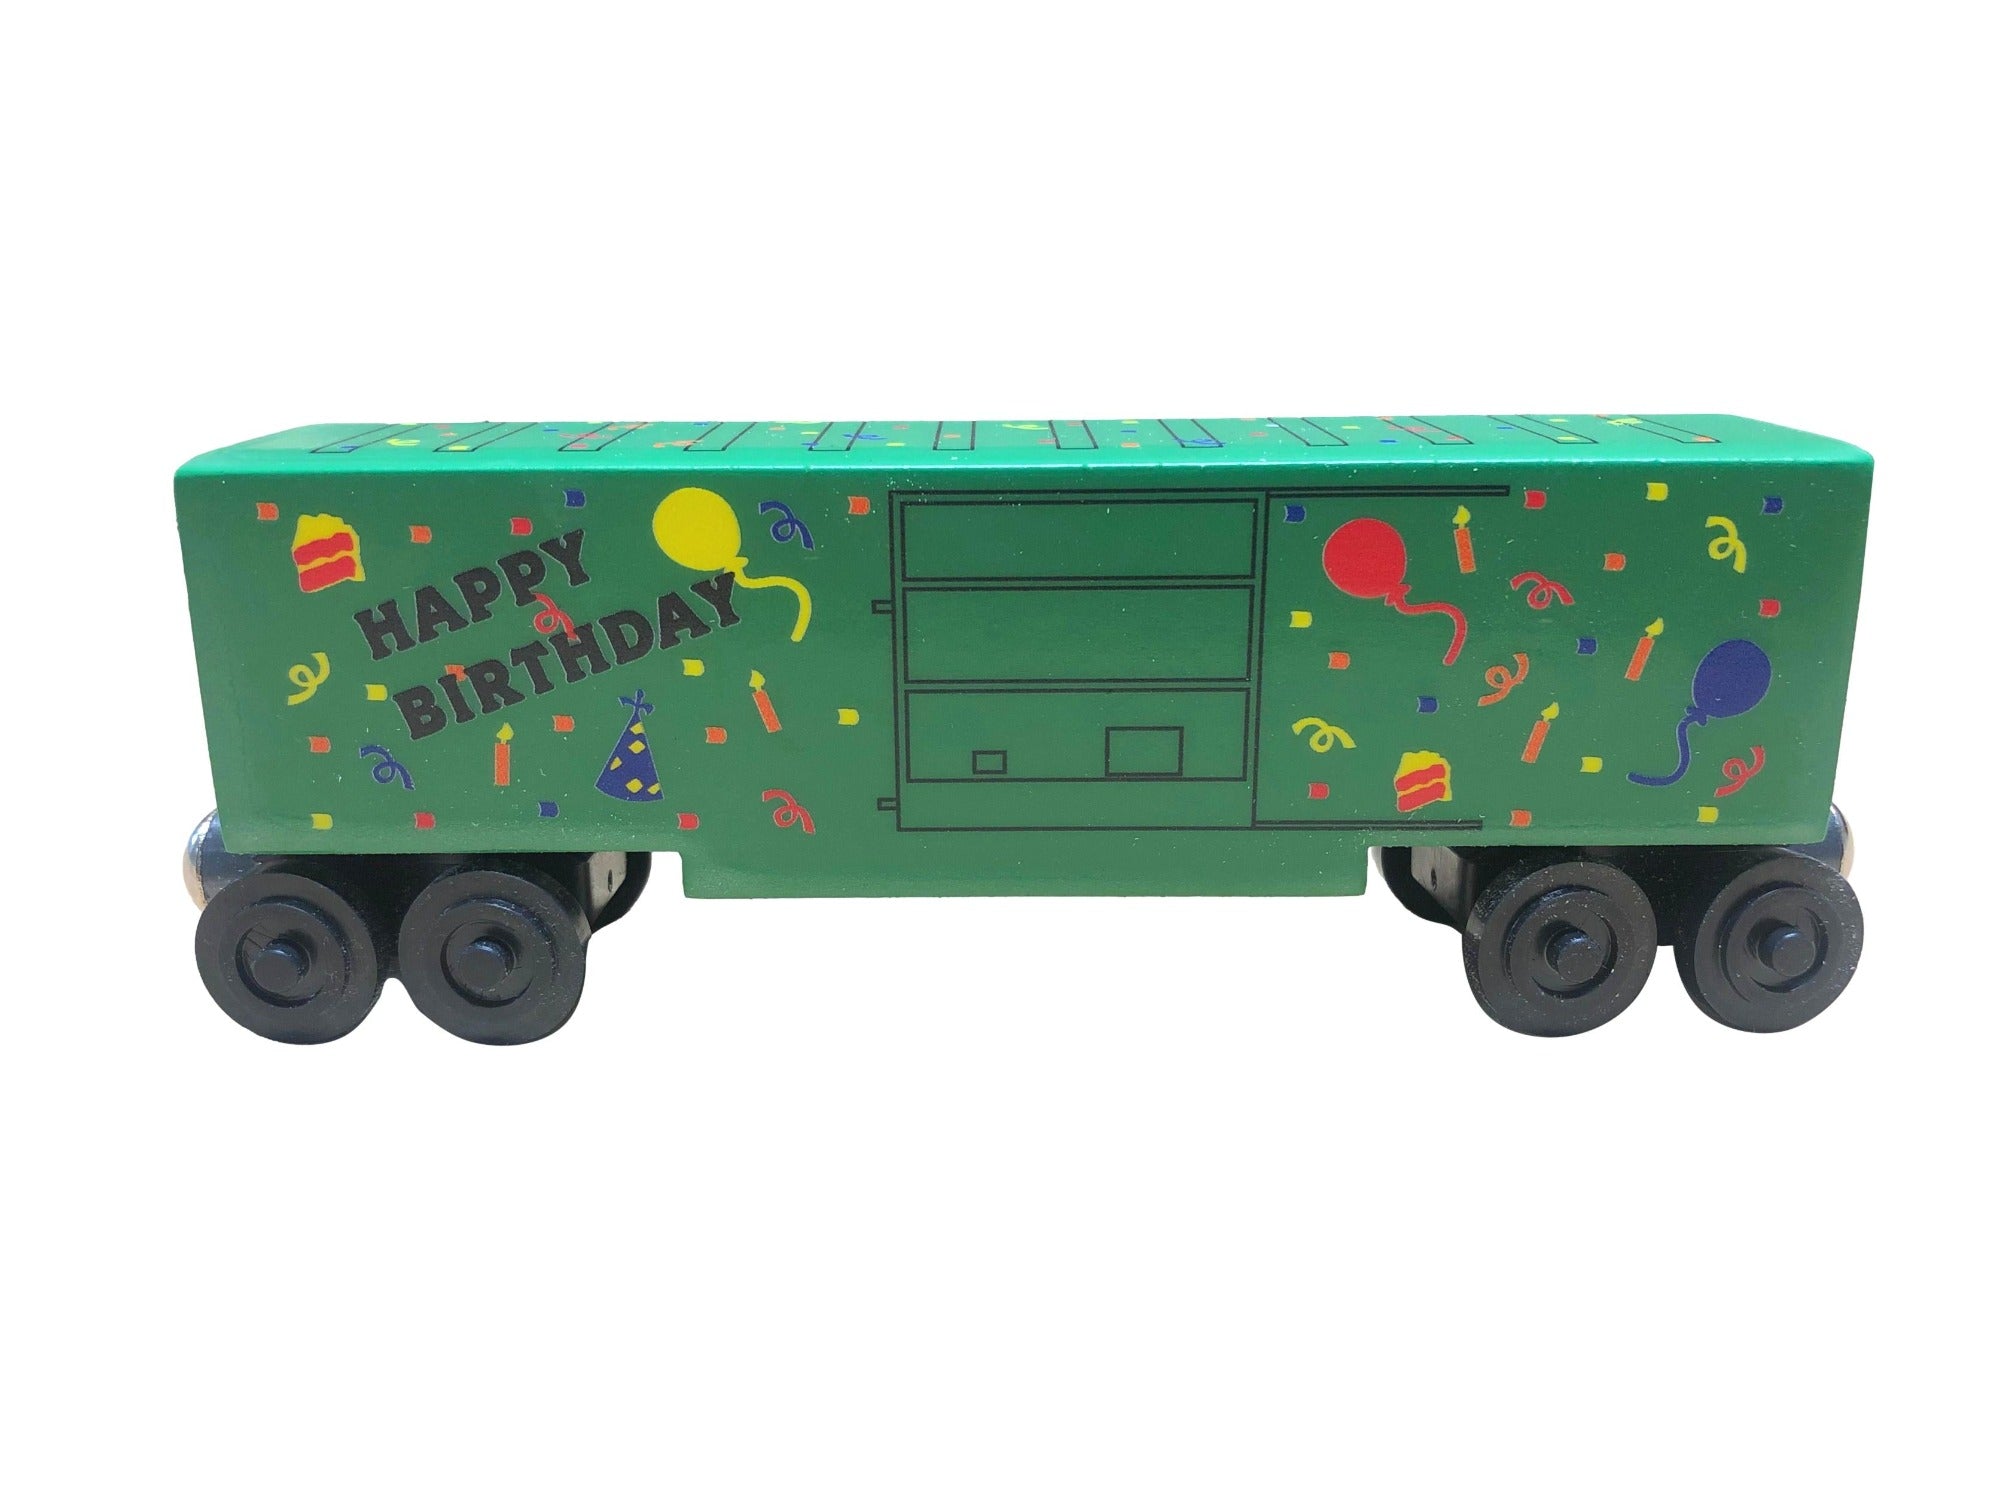 Green Birthday Toy Train Hi-Cube Boxcar by Whittle Shortline Railroad